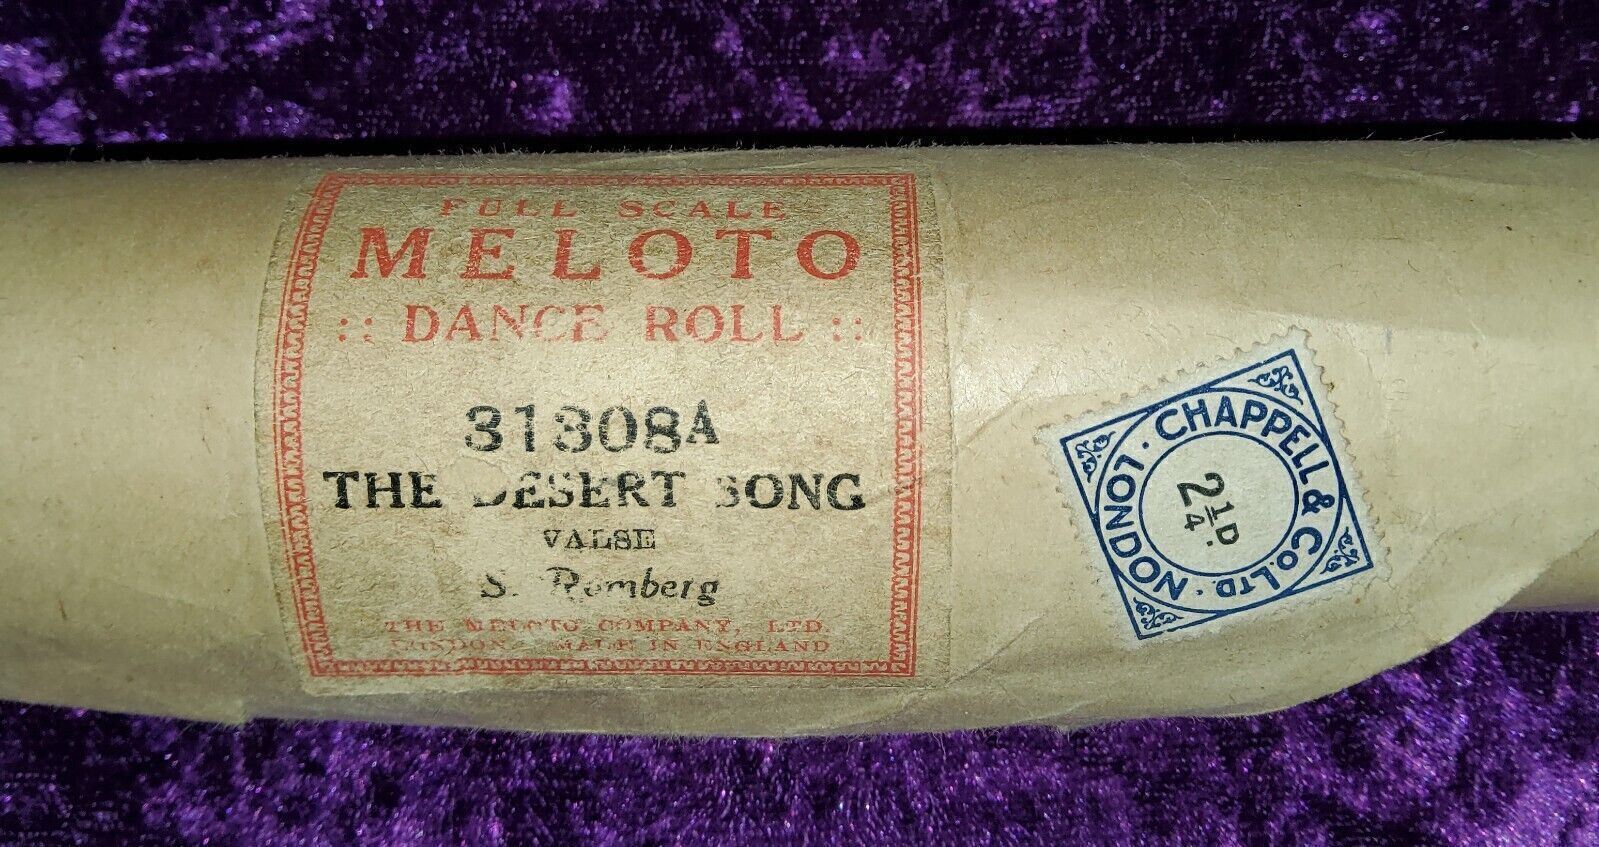 The Desert Song Meloto Dance Roll 31308A. Ref00048